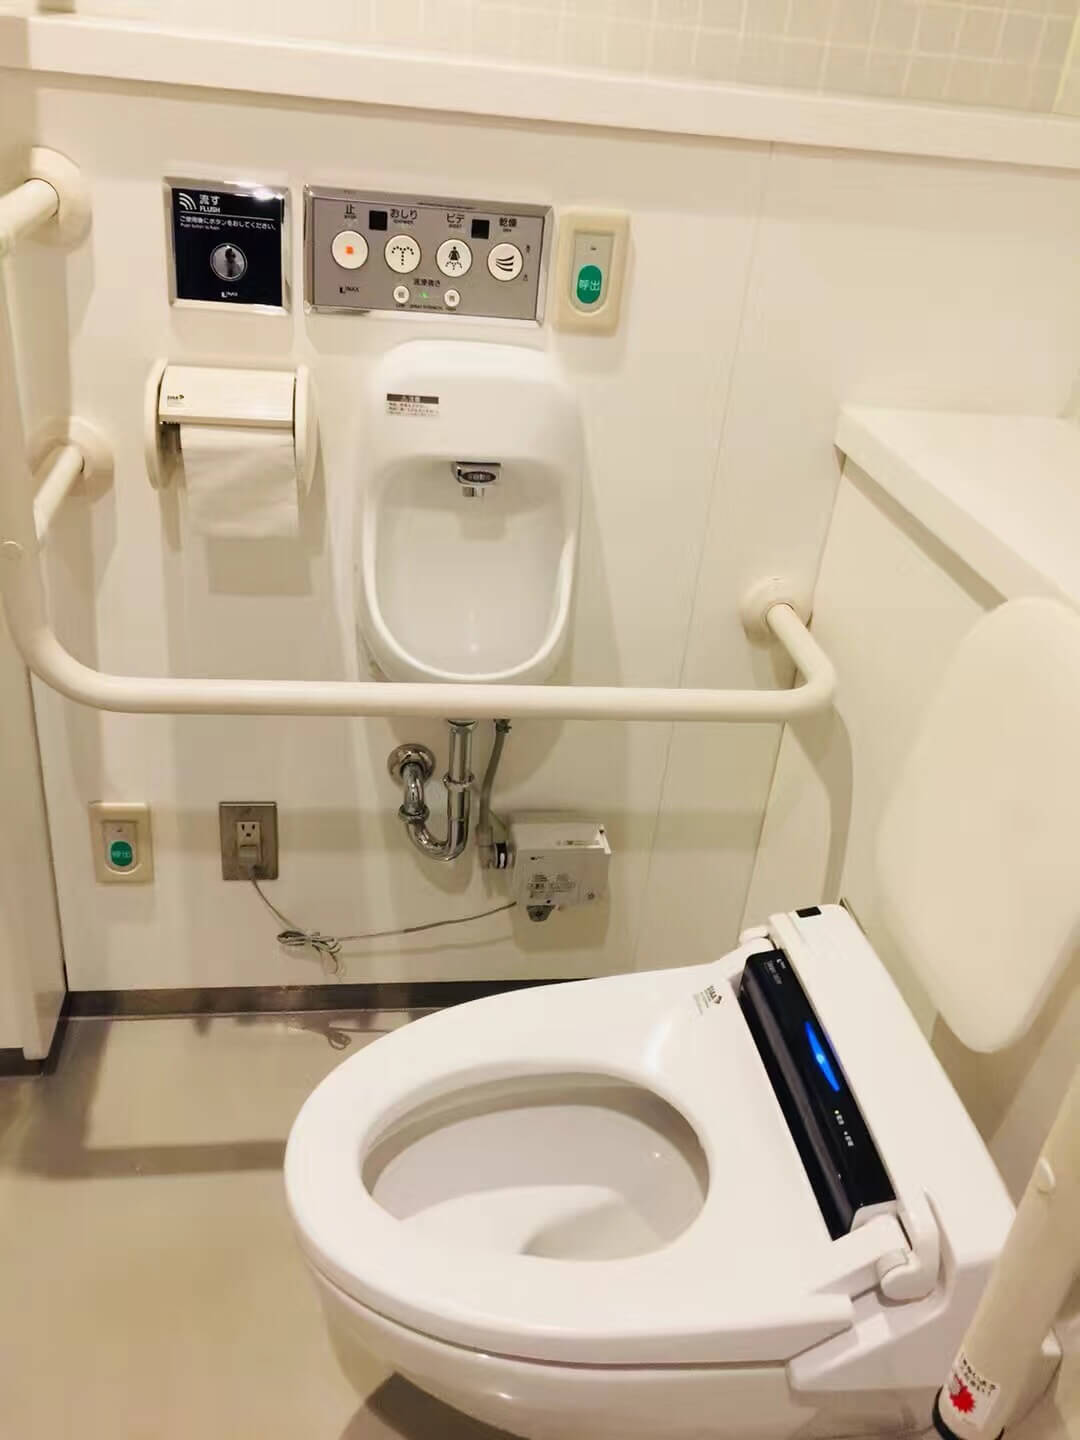 日本公共卫生间常见的温水马桶